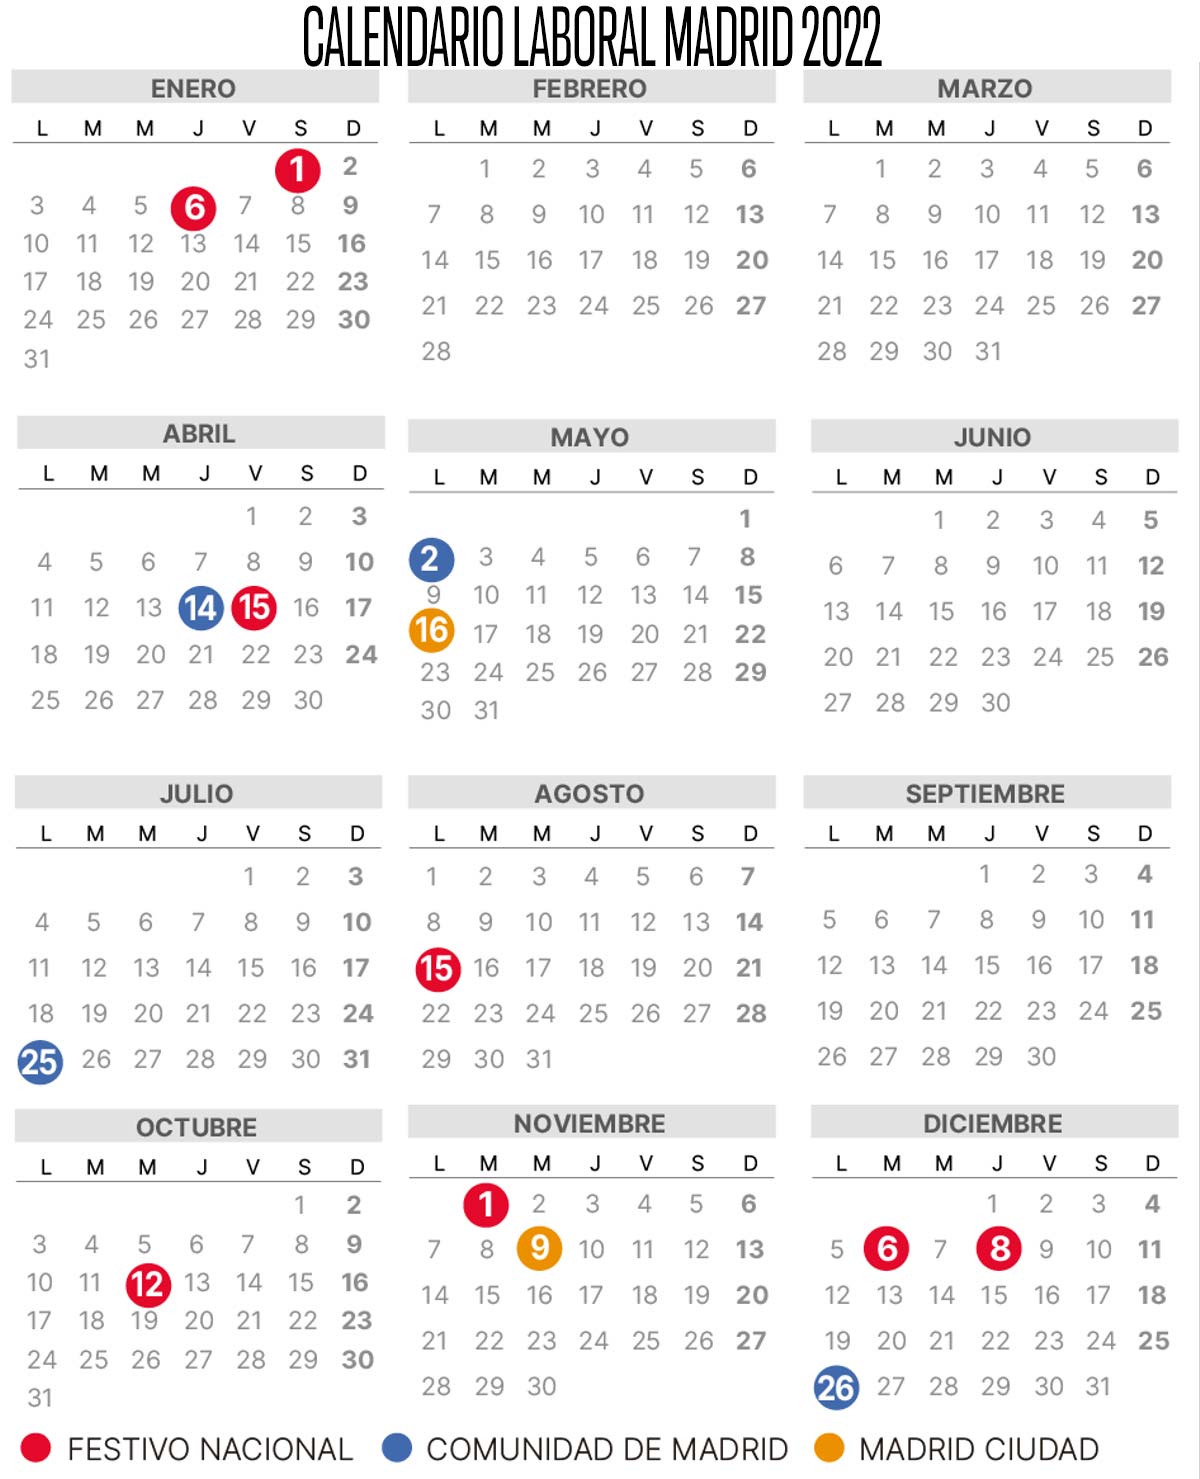 Calendario laboral de Madrid 2022